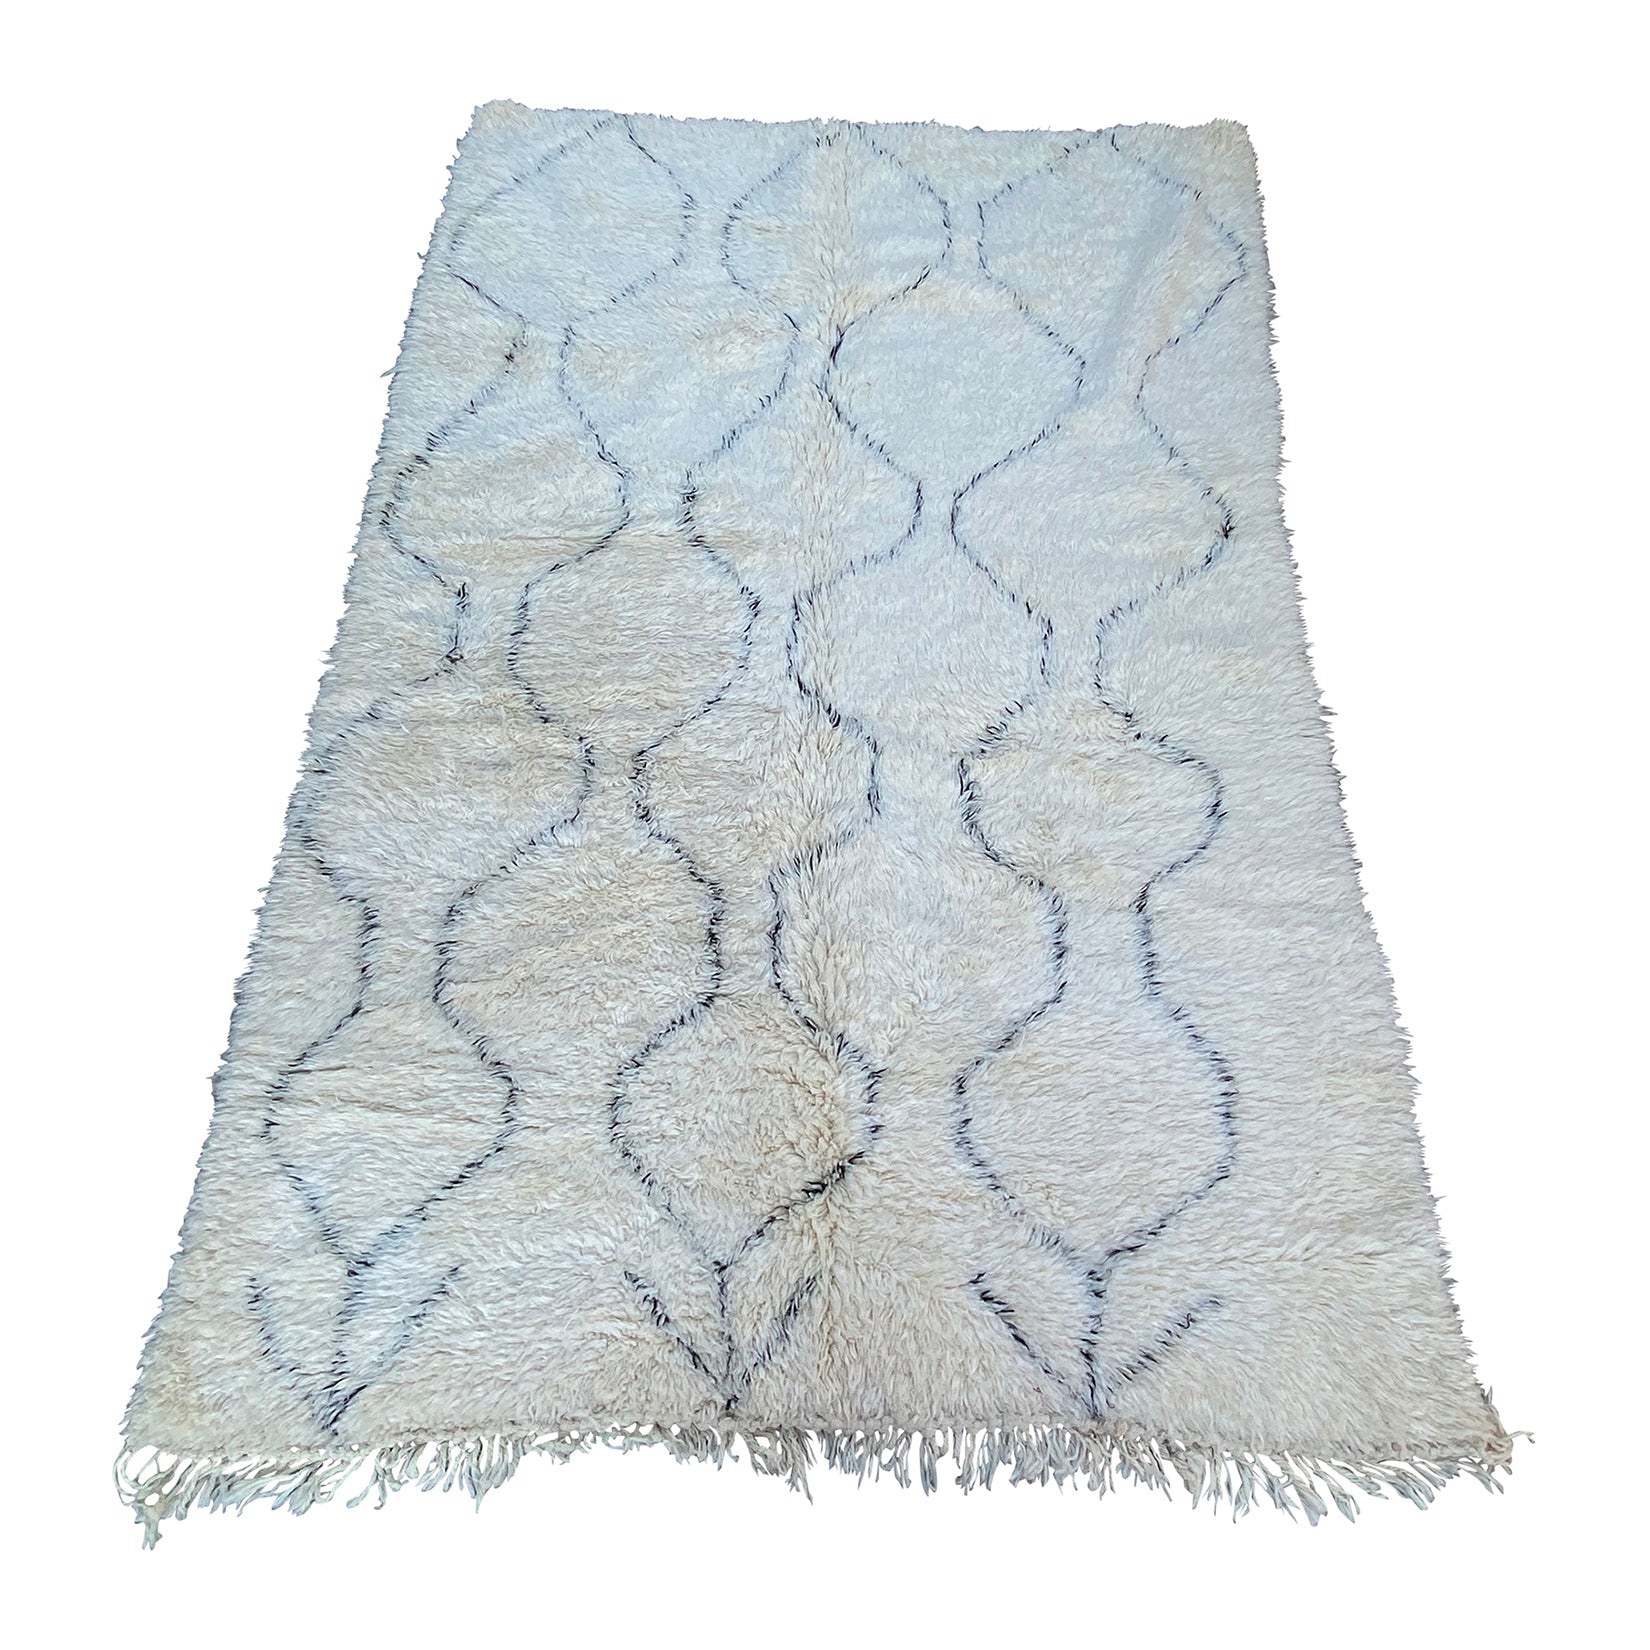 Large white berber carpet with geometric pattern design - Kantara | Moroccan Rugs